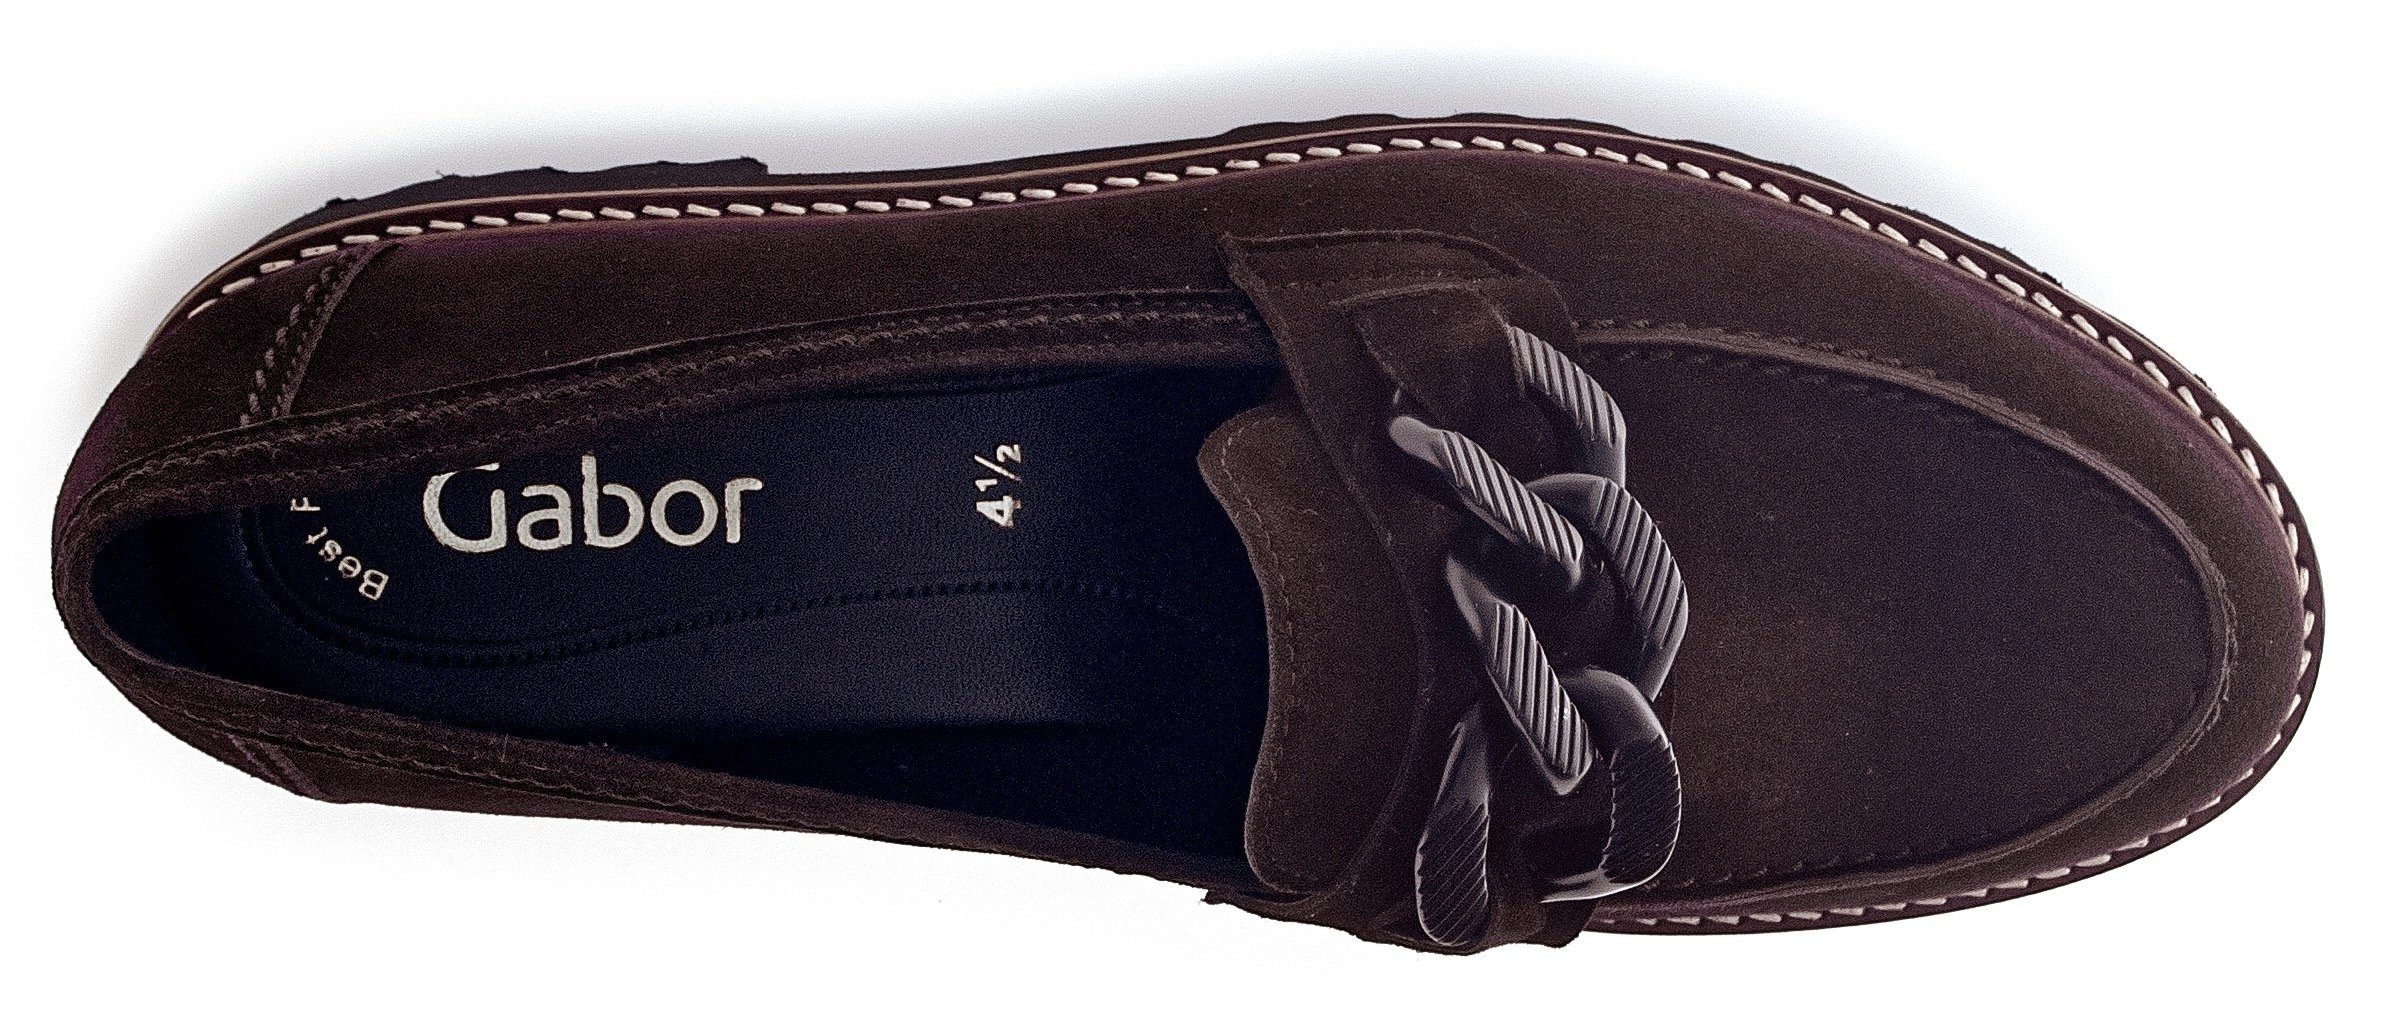 Best dunkelbraun-schwarz mit Gabor Slipper Fitting-Ausstattung